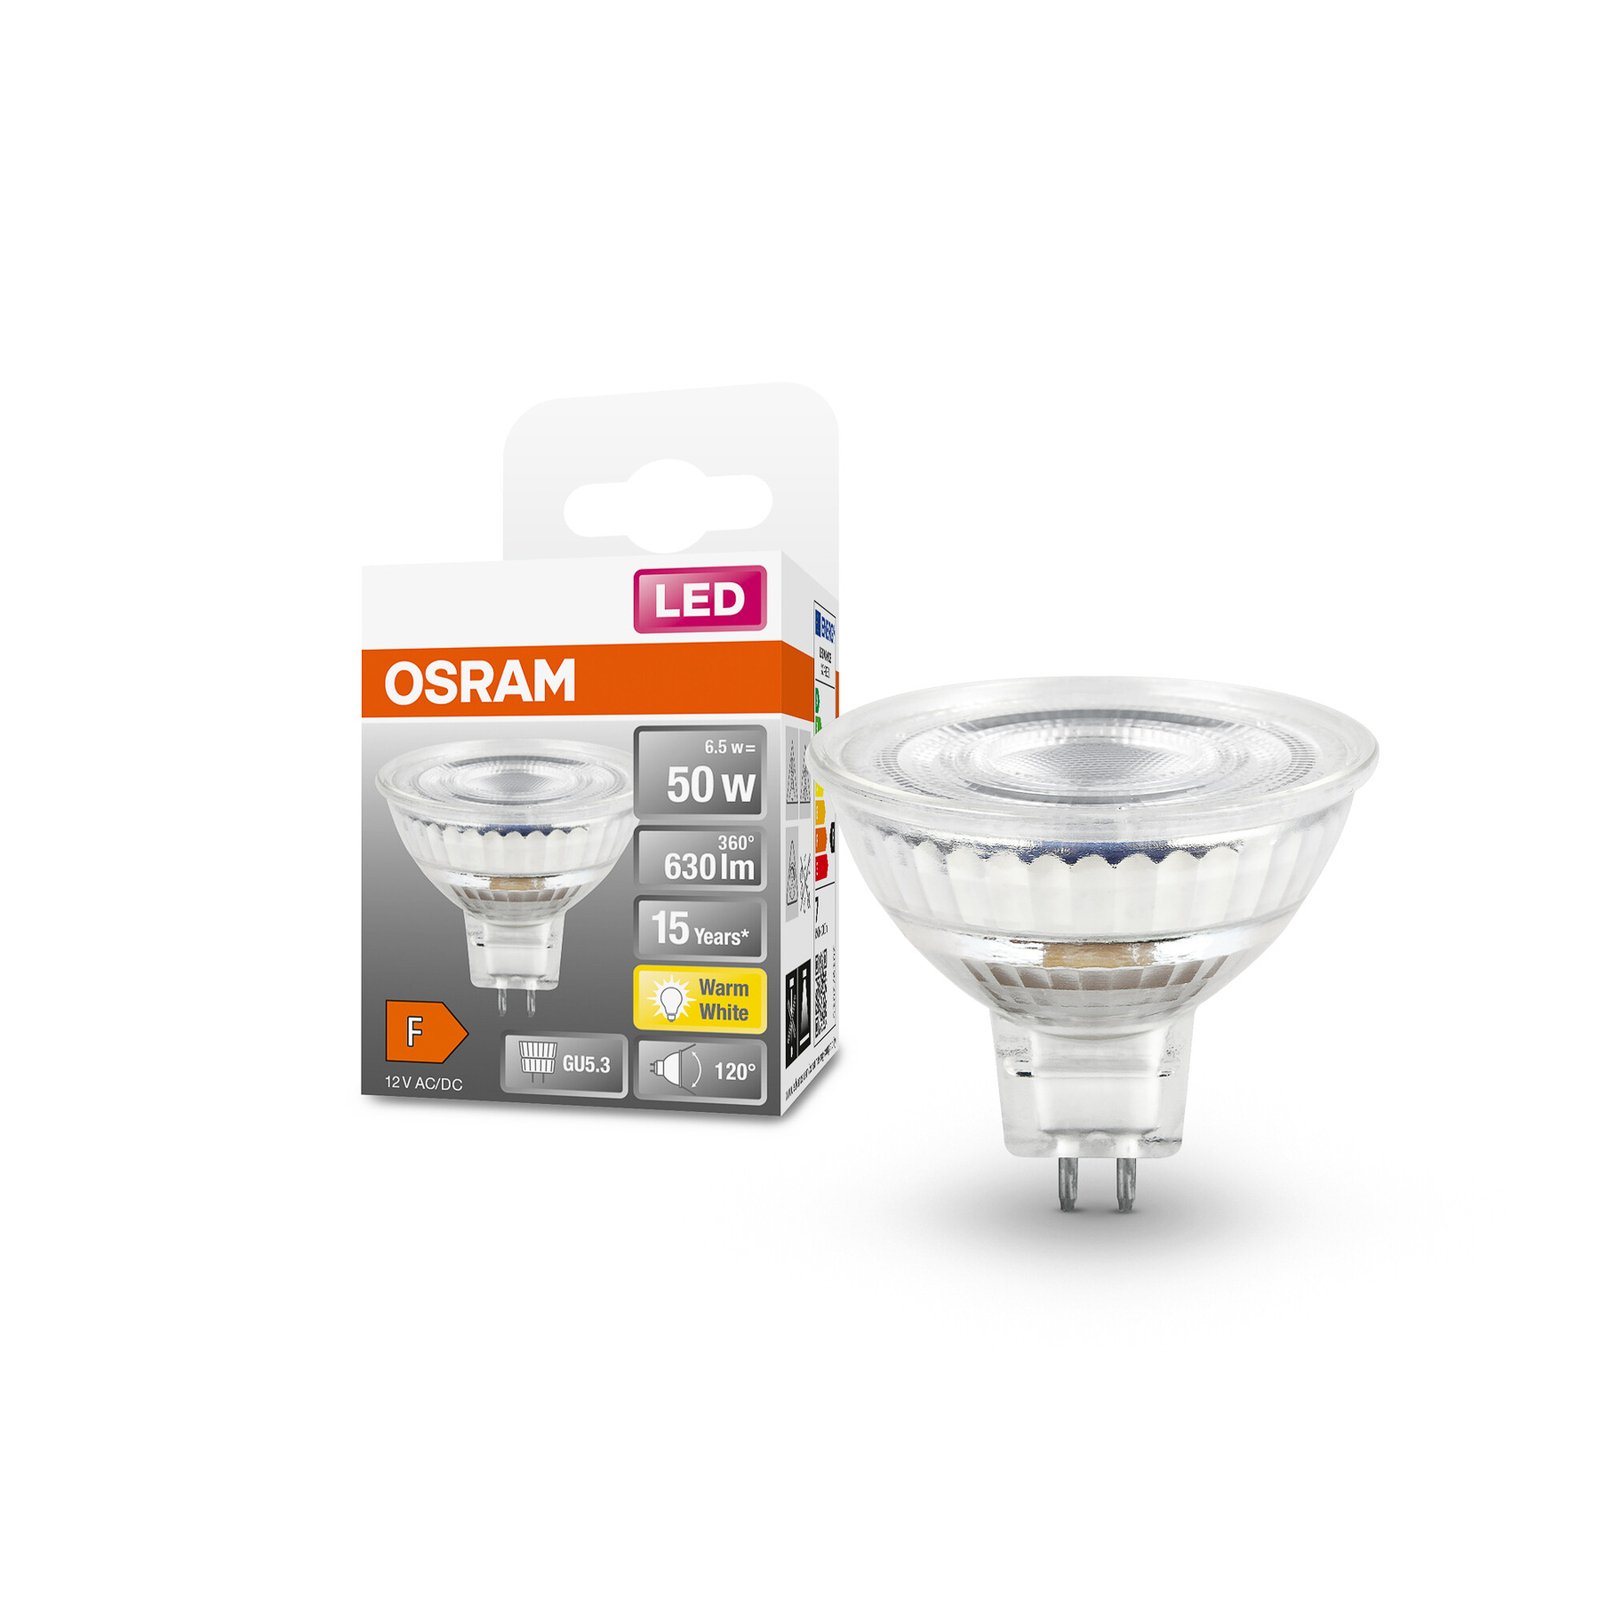 OSRAM LED bulb, GU5.3, 6.5 W, 12 V, 2,700 K, 120°